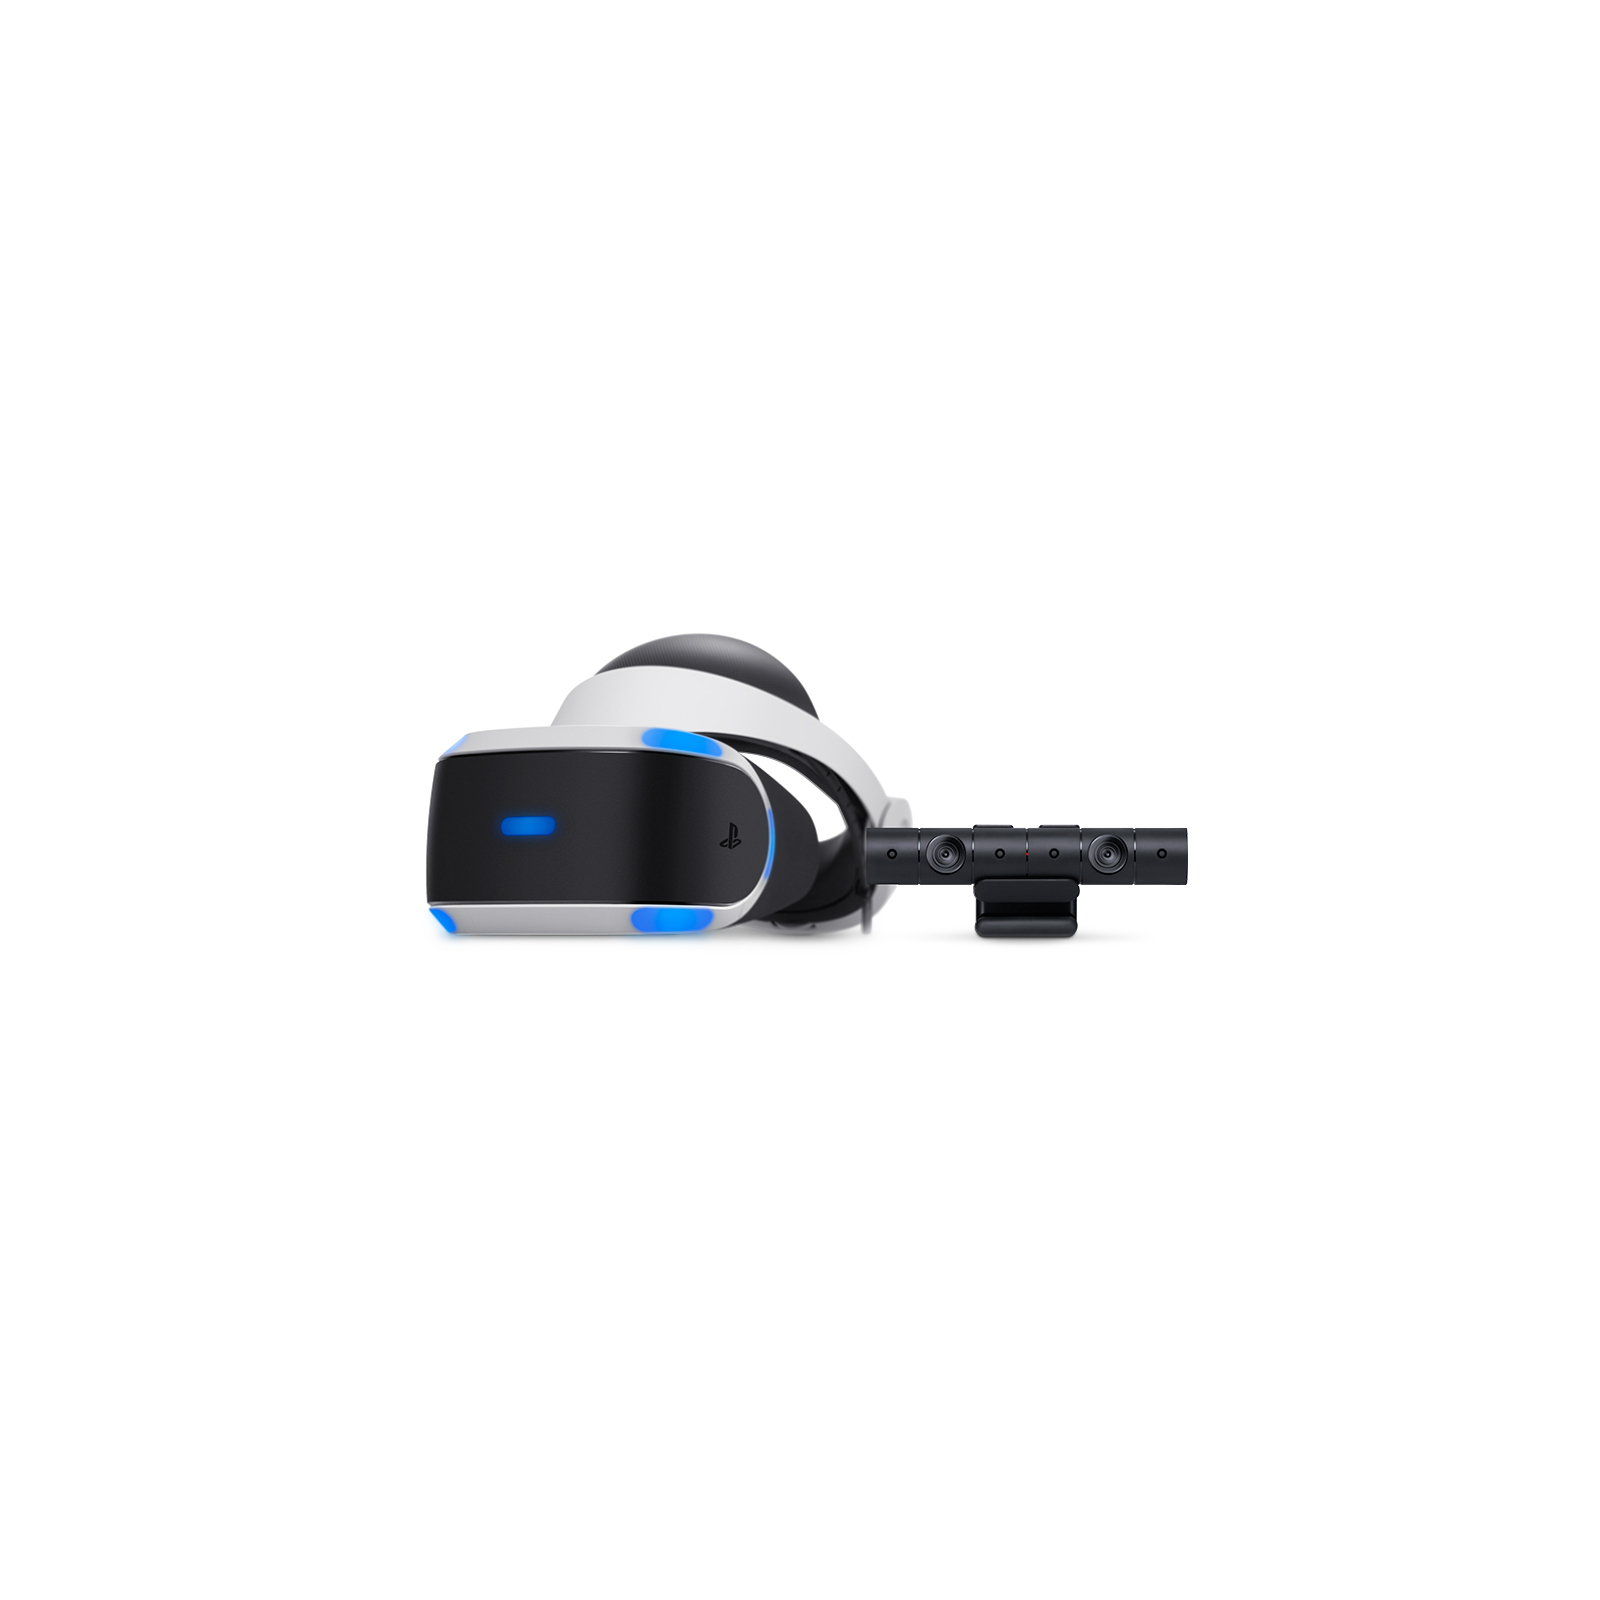 Игровая консоль Sony PlayStation 4 Pro 1TB + PlayStation VR изображение 9